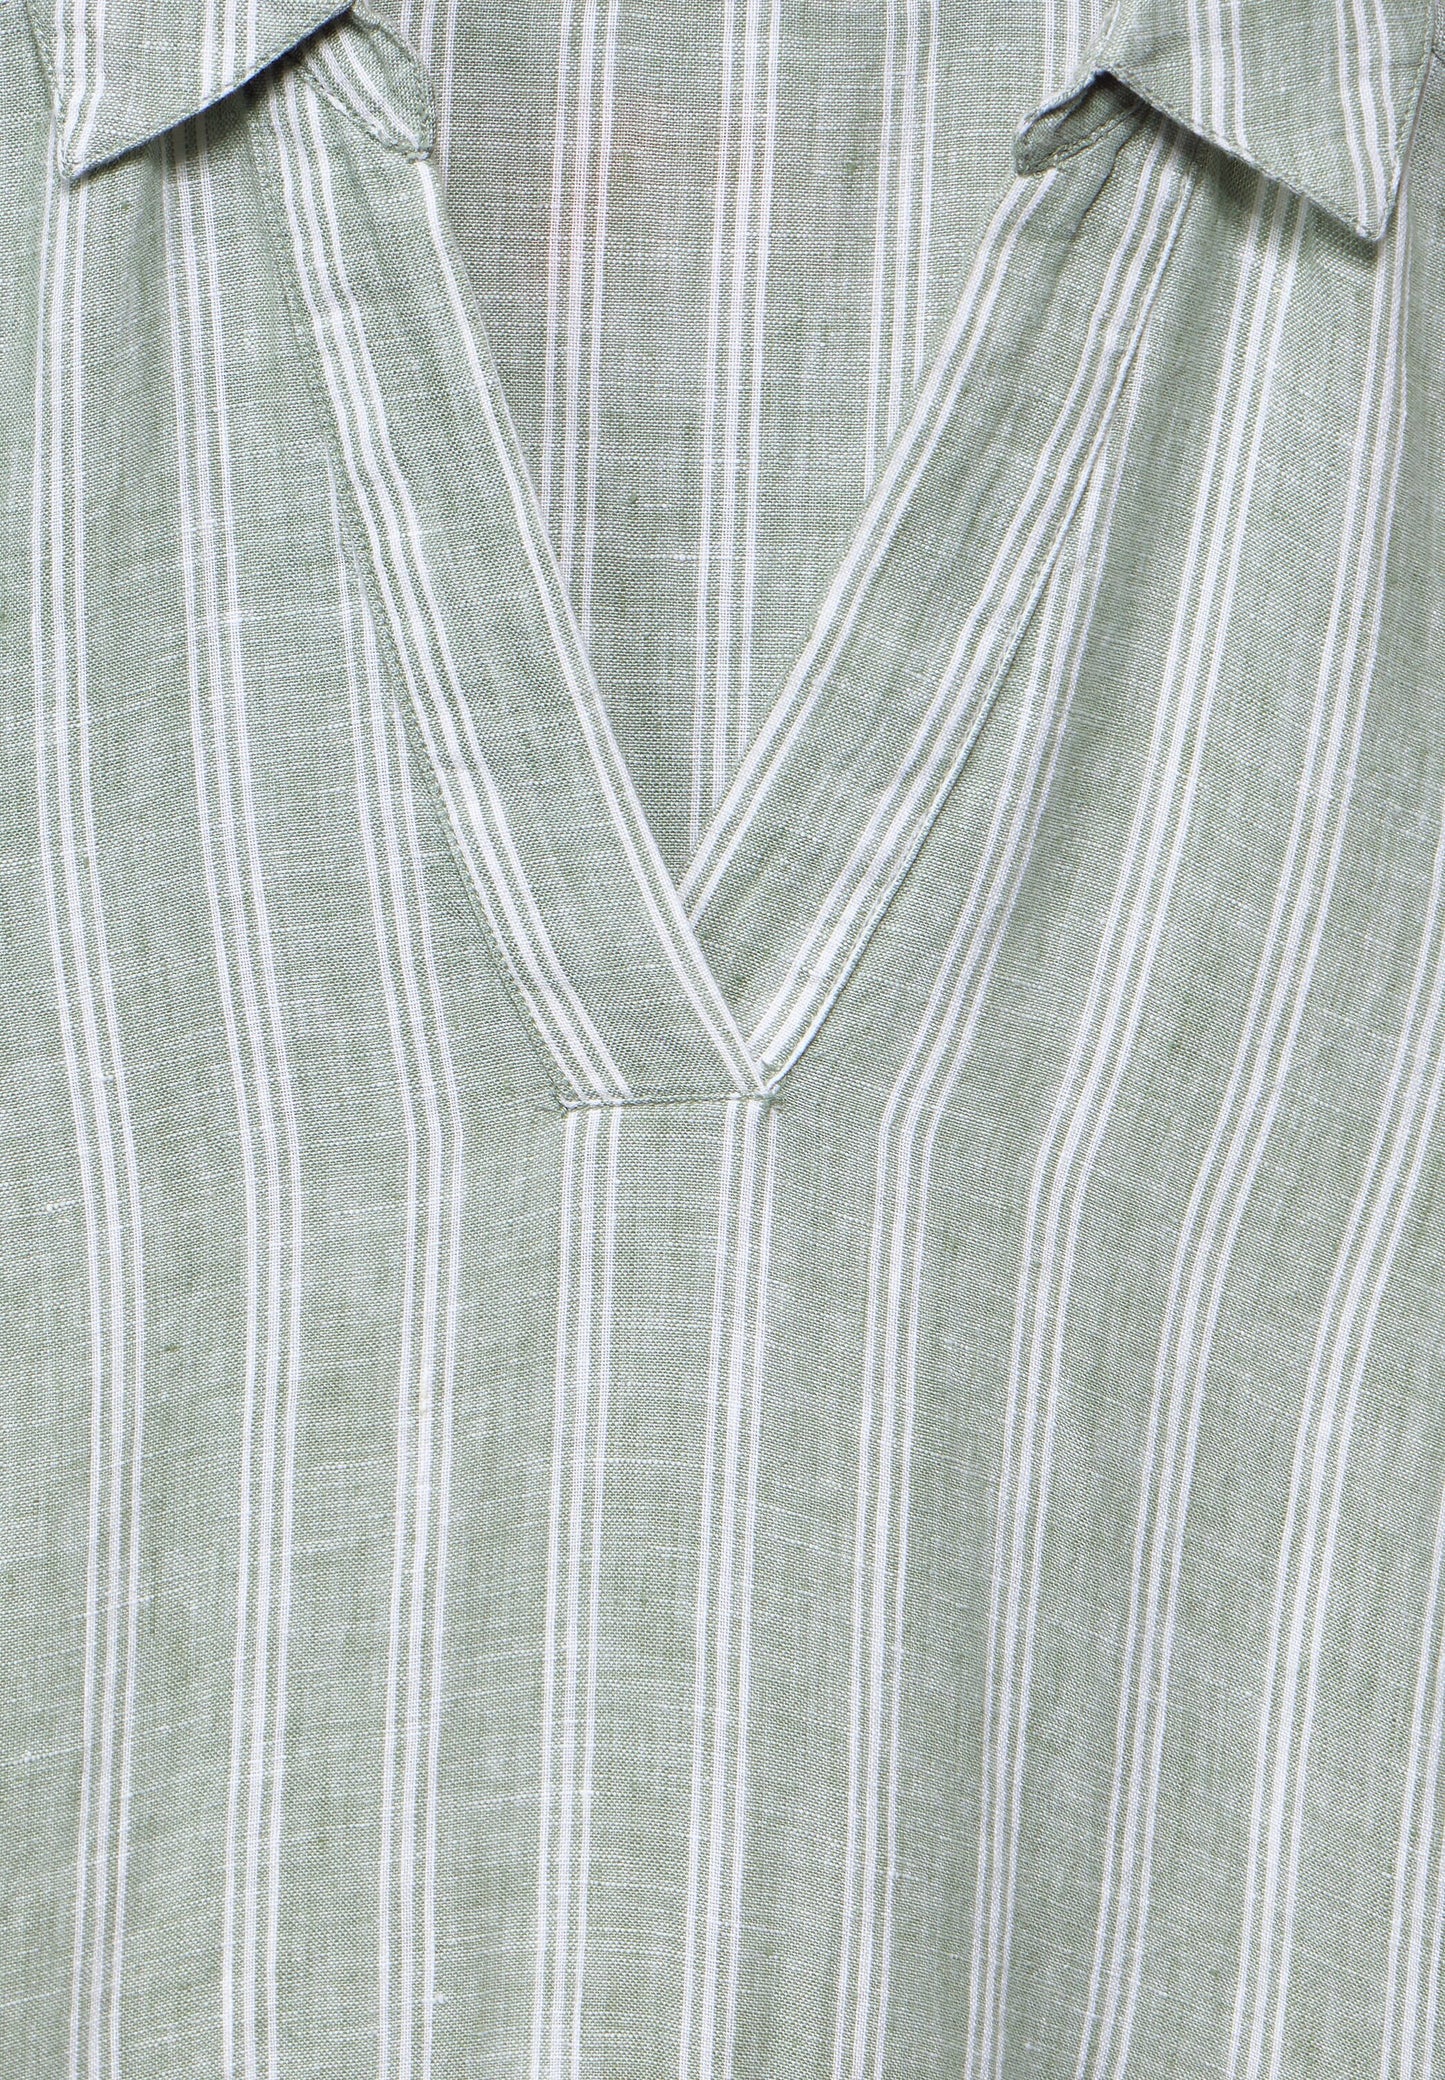 CECIL - Leinenkleid mit Streifen - soft grün